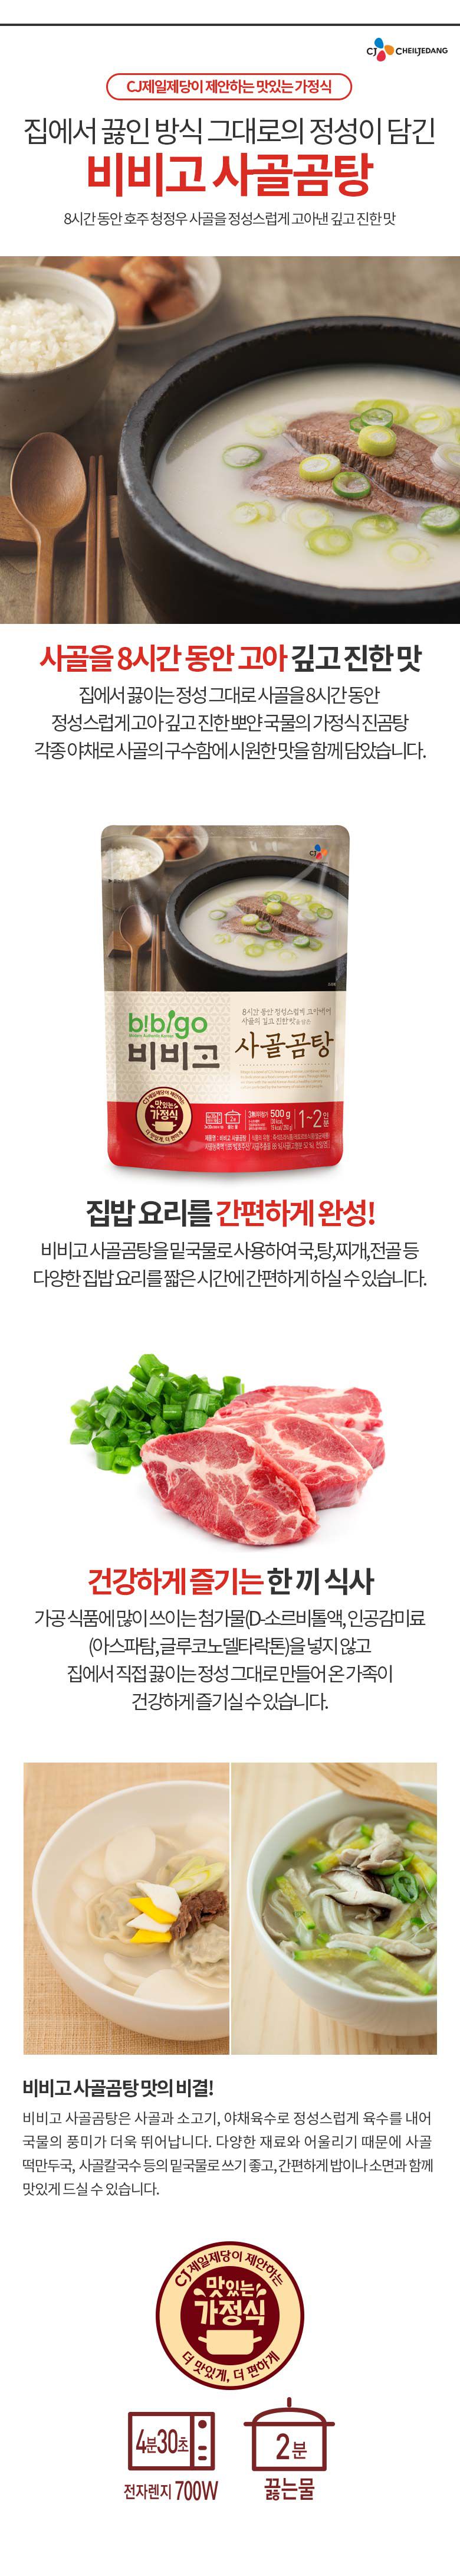 韓國食品-[CJ] 비비고 사골곰탕 500g